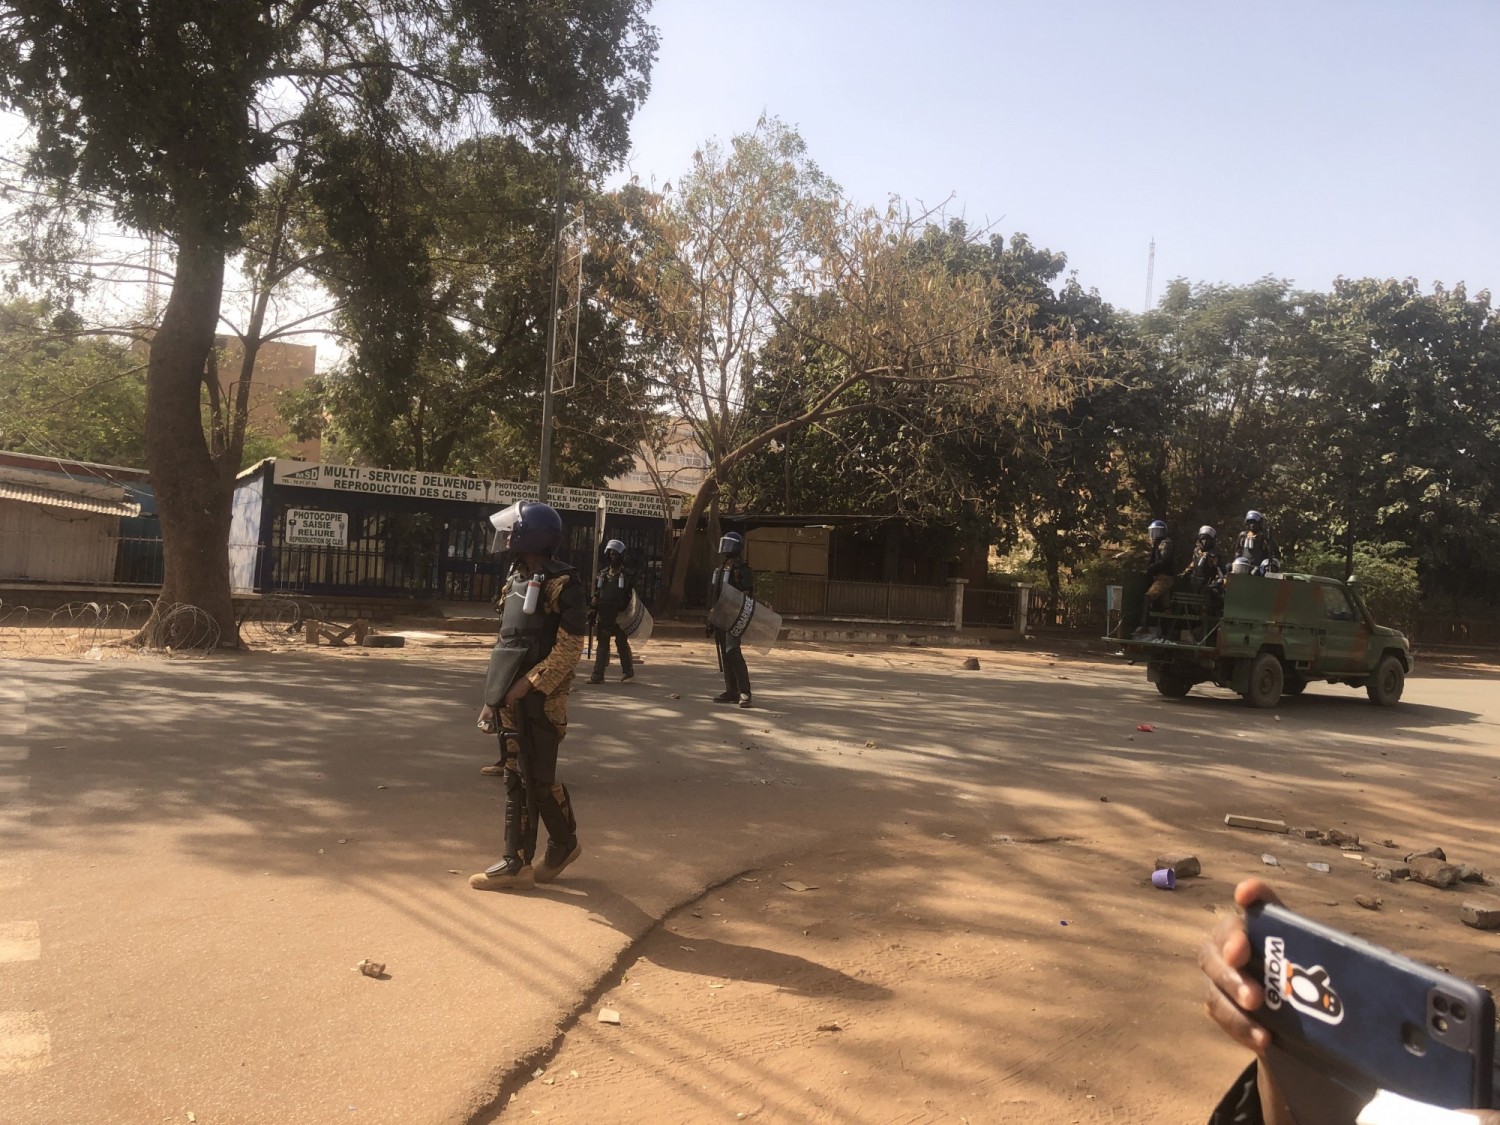 Burkina Faso : Chaude journée à Ouagadougou avec une manifestation dispersée au gaz lacrymogène